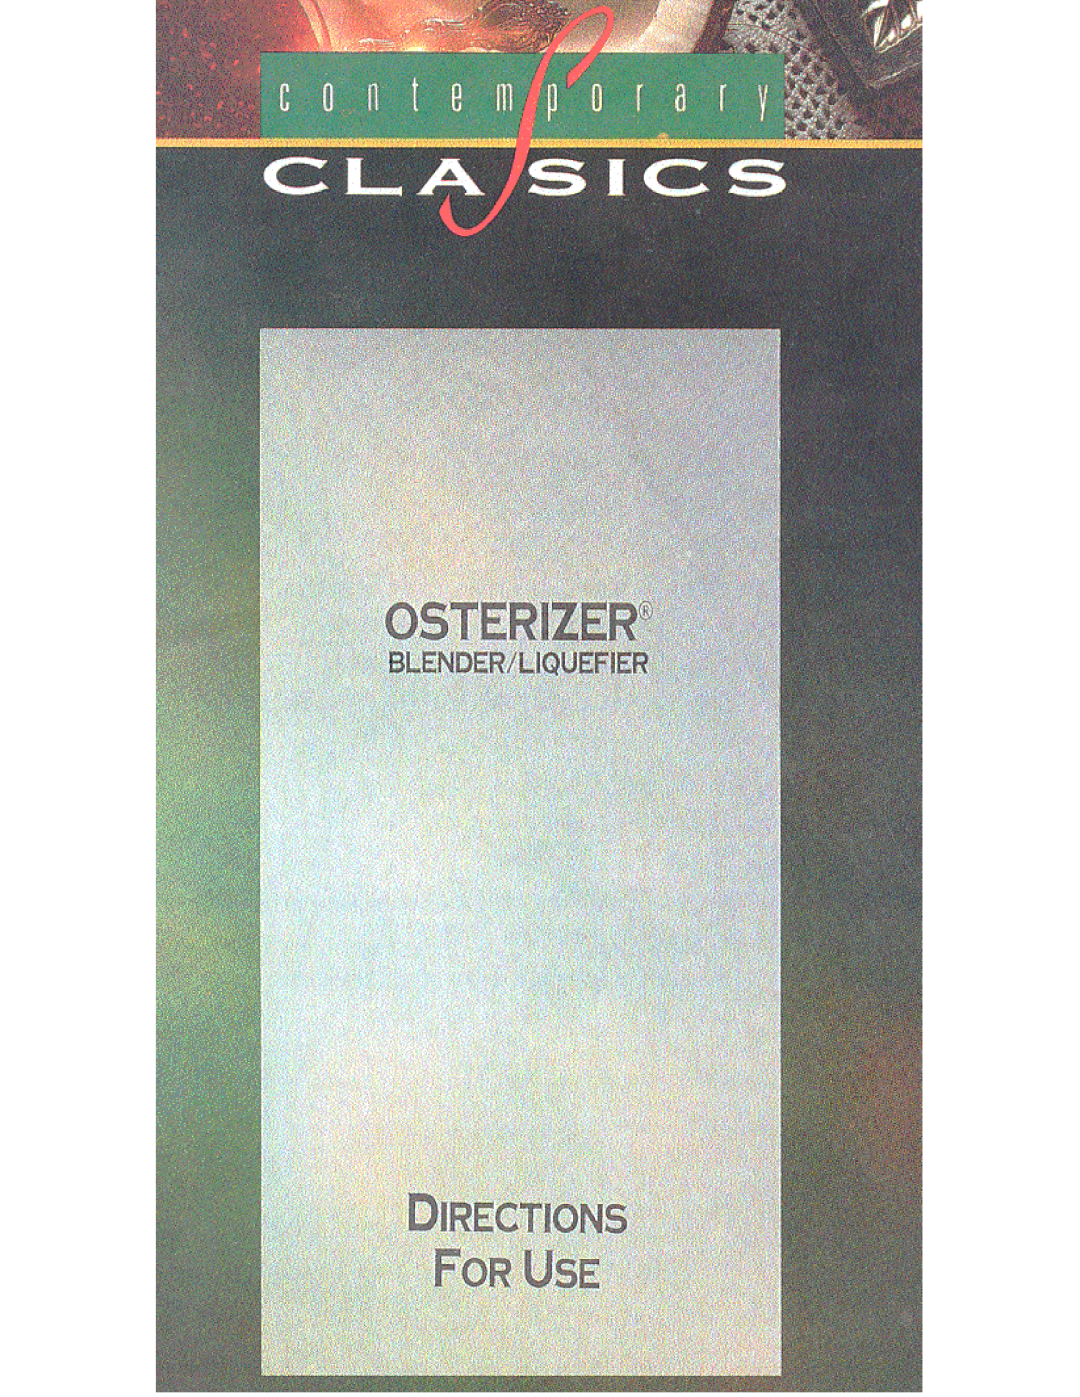 Oster IZER BLENDER/LIQUEFIER manual 